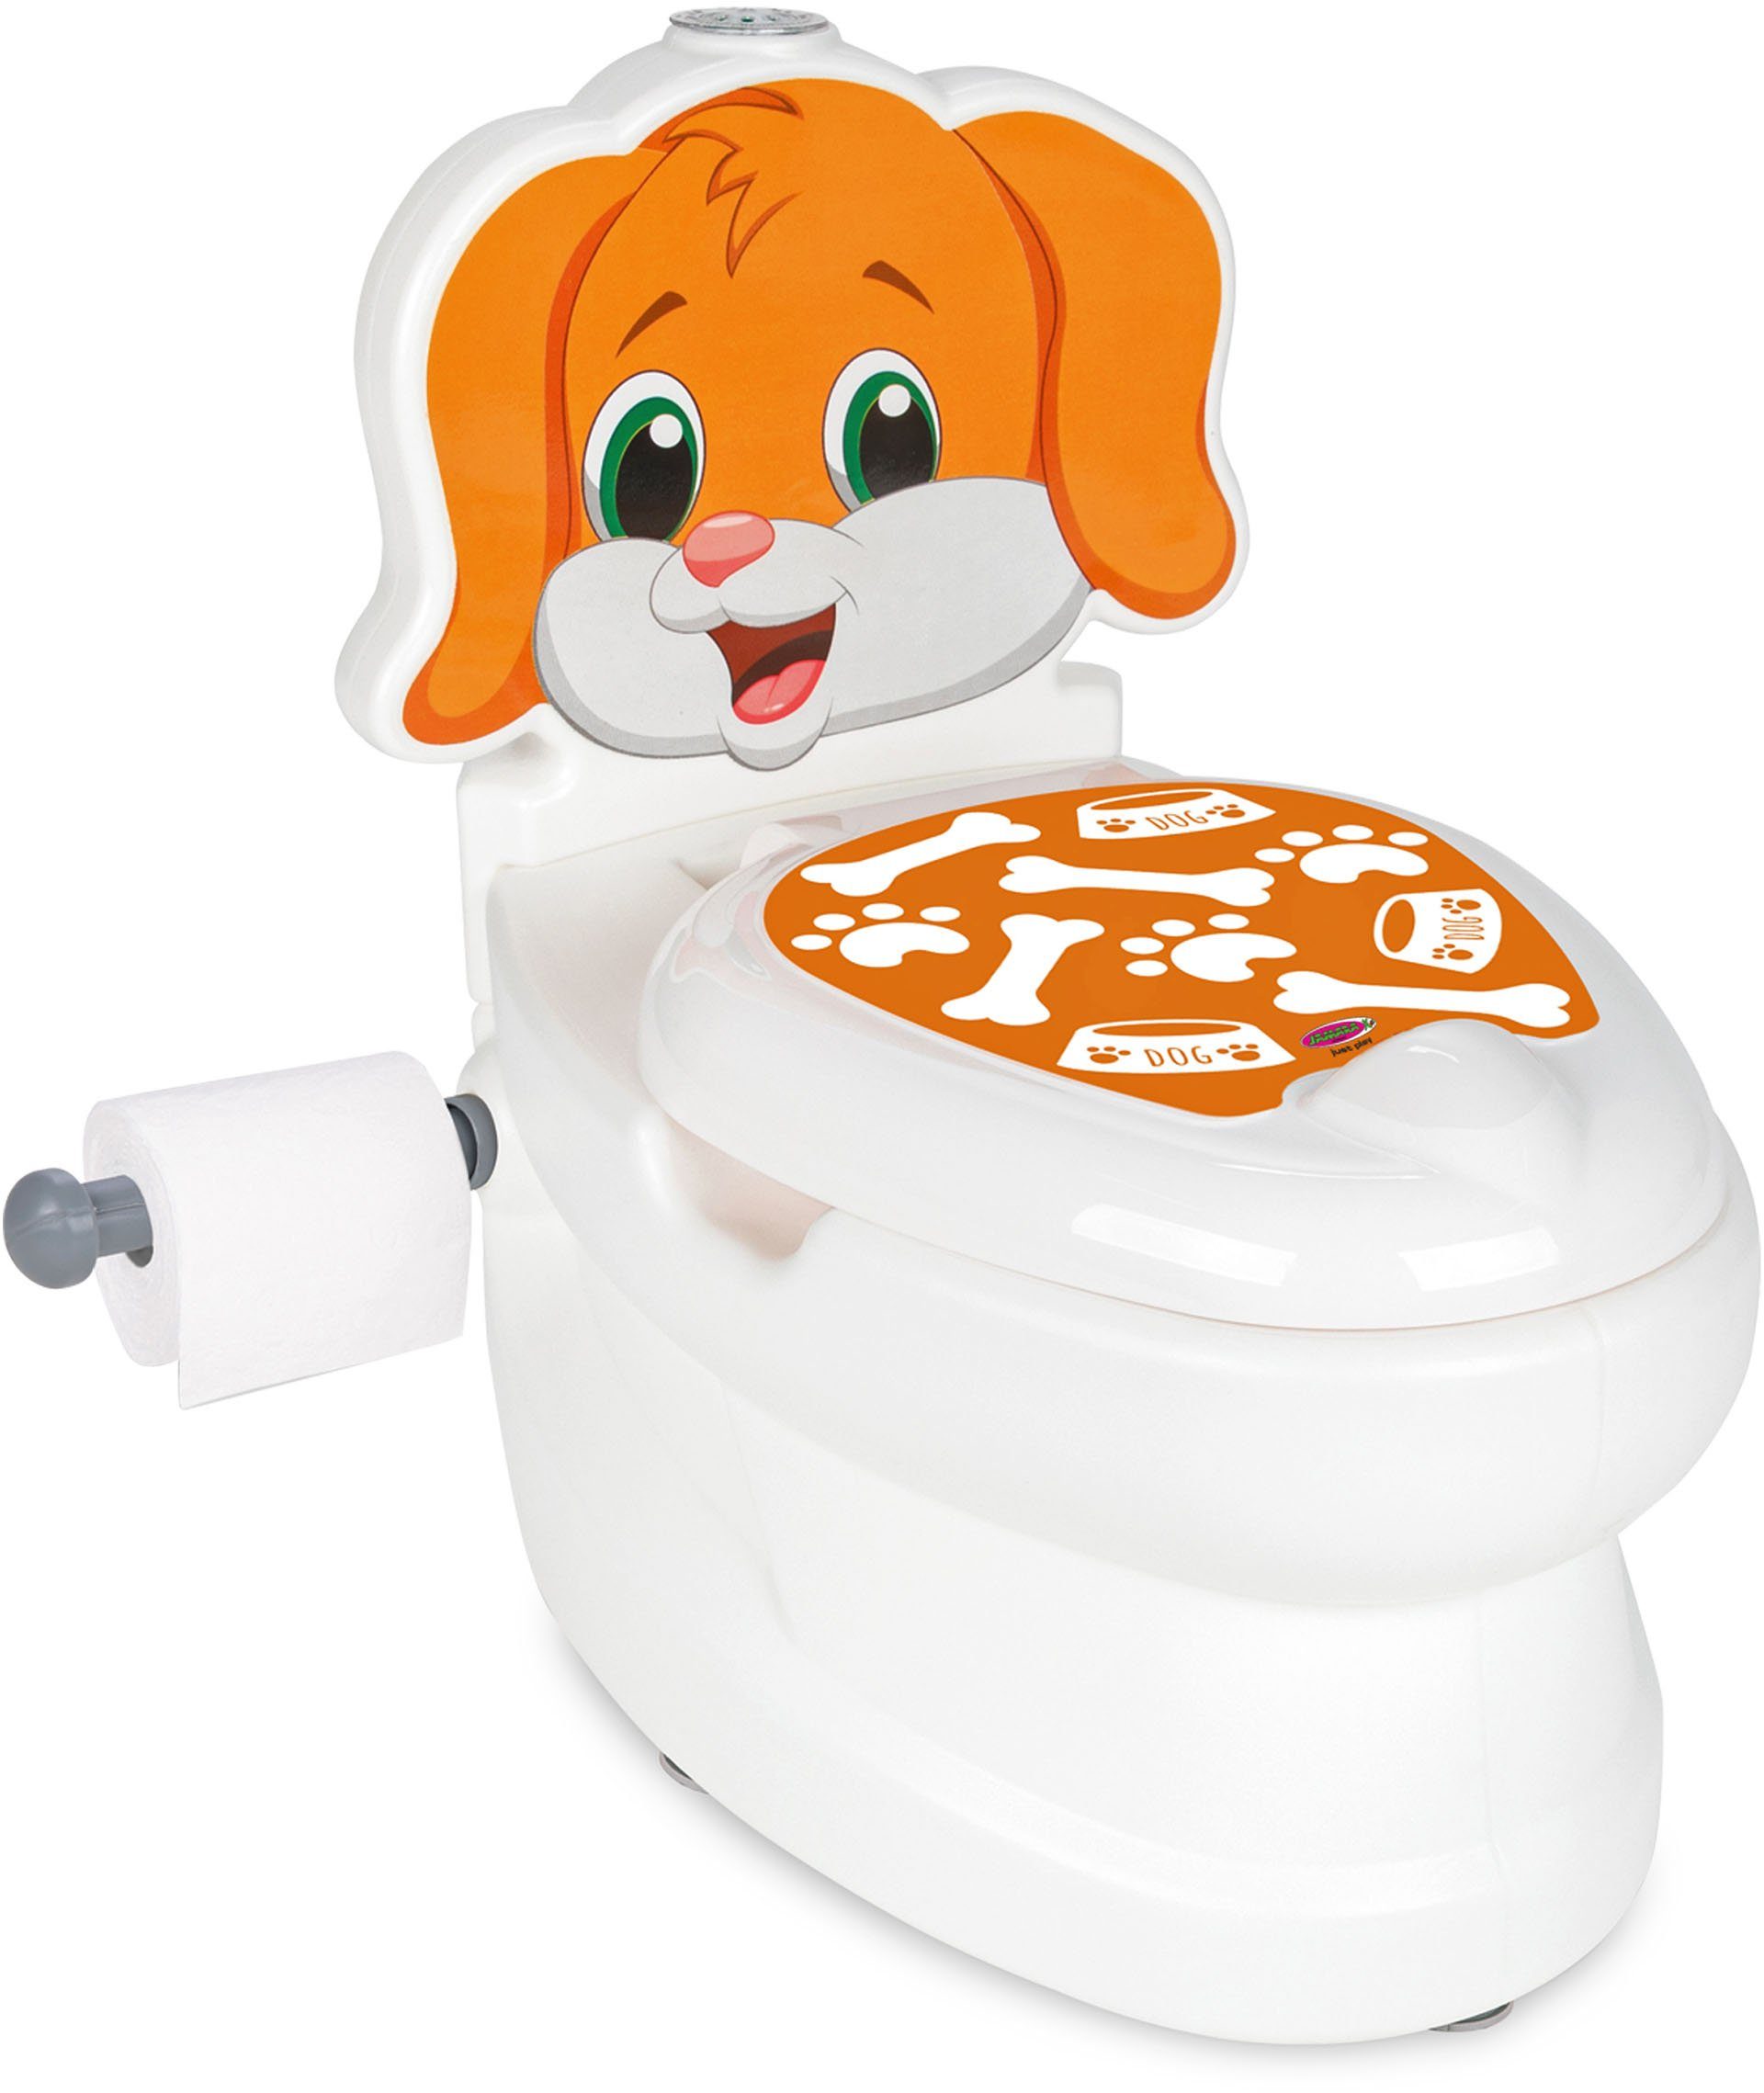 Jamara Toilettentrainer Meine kleine Toilette, Hund, mit Spülsound und Toilettenpapierhalter | Toilettentrainer